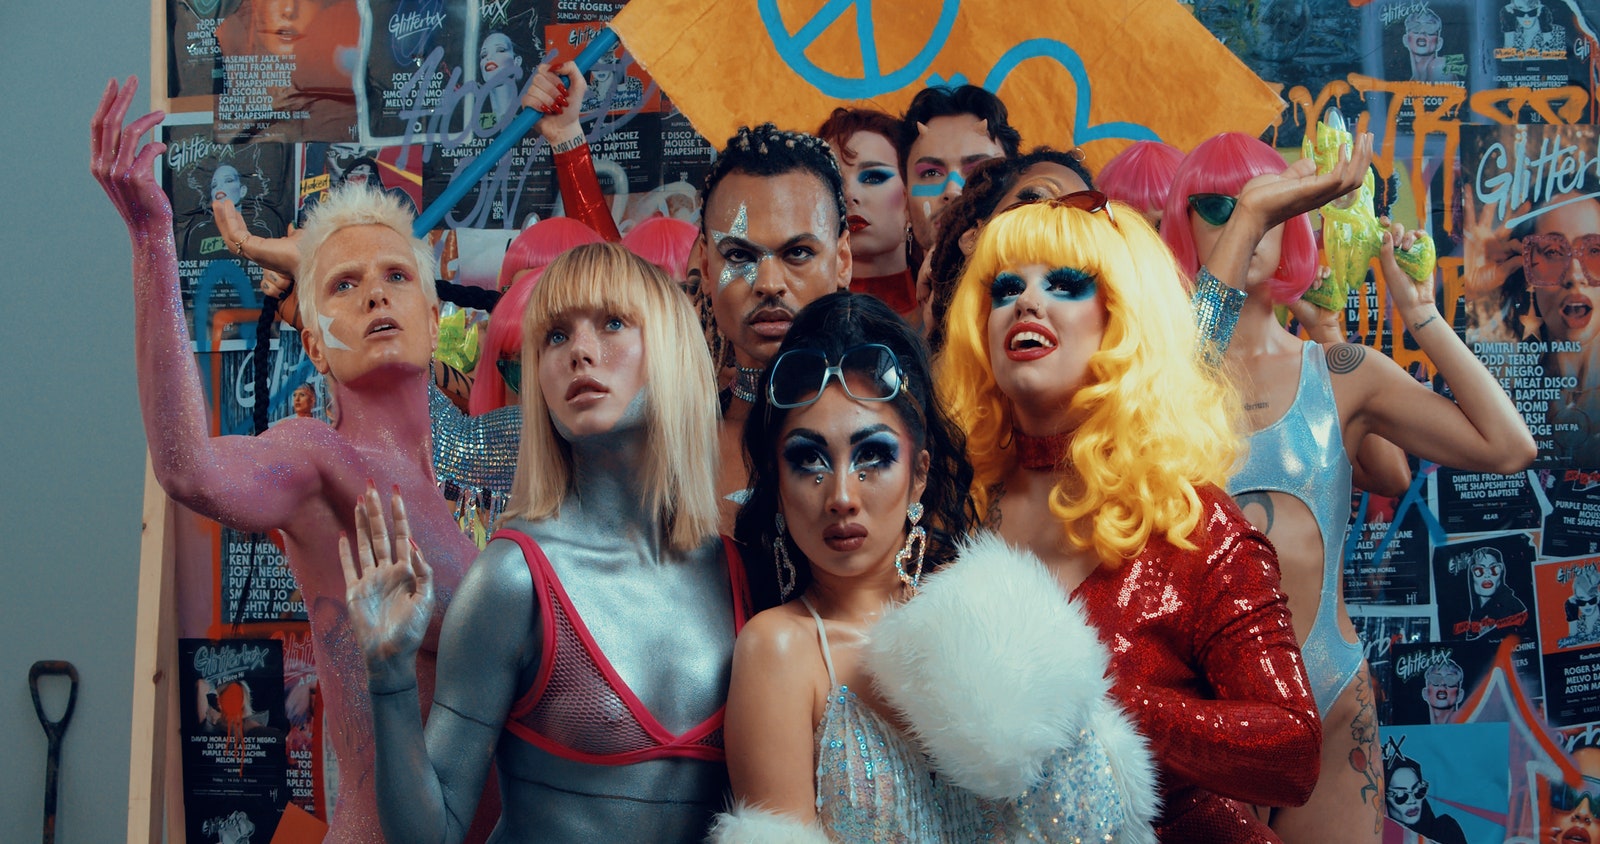 ЛГБТК: 8 новых квир-фильмов, которые стоит посмотреть в эти выходные |  Vogue Russia